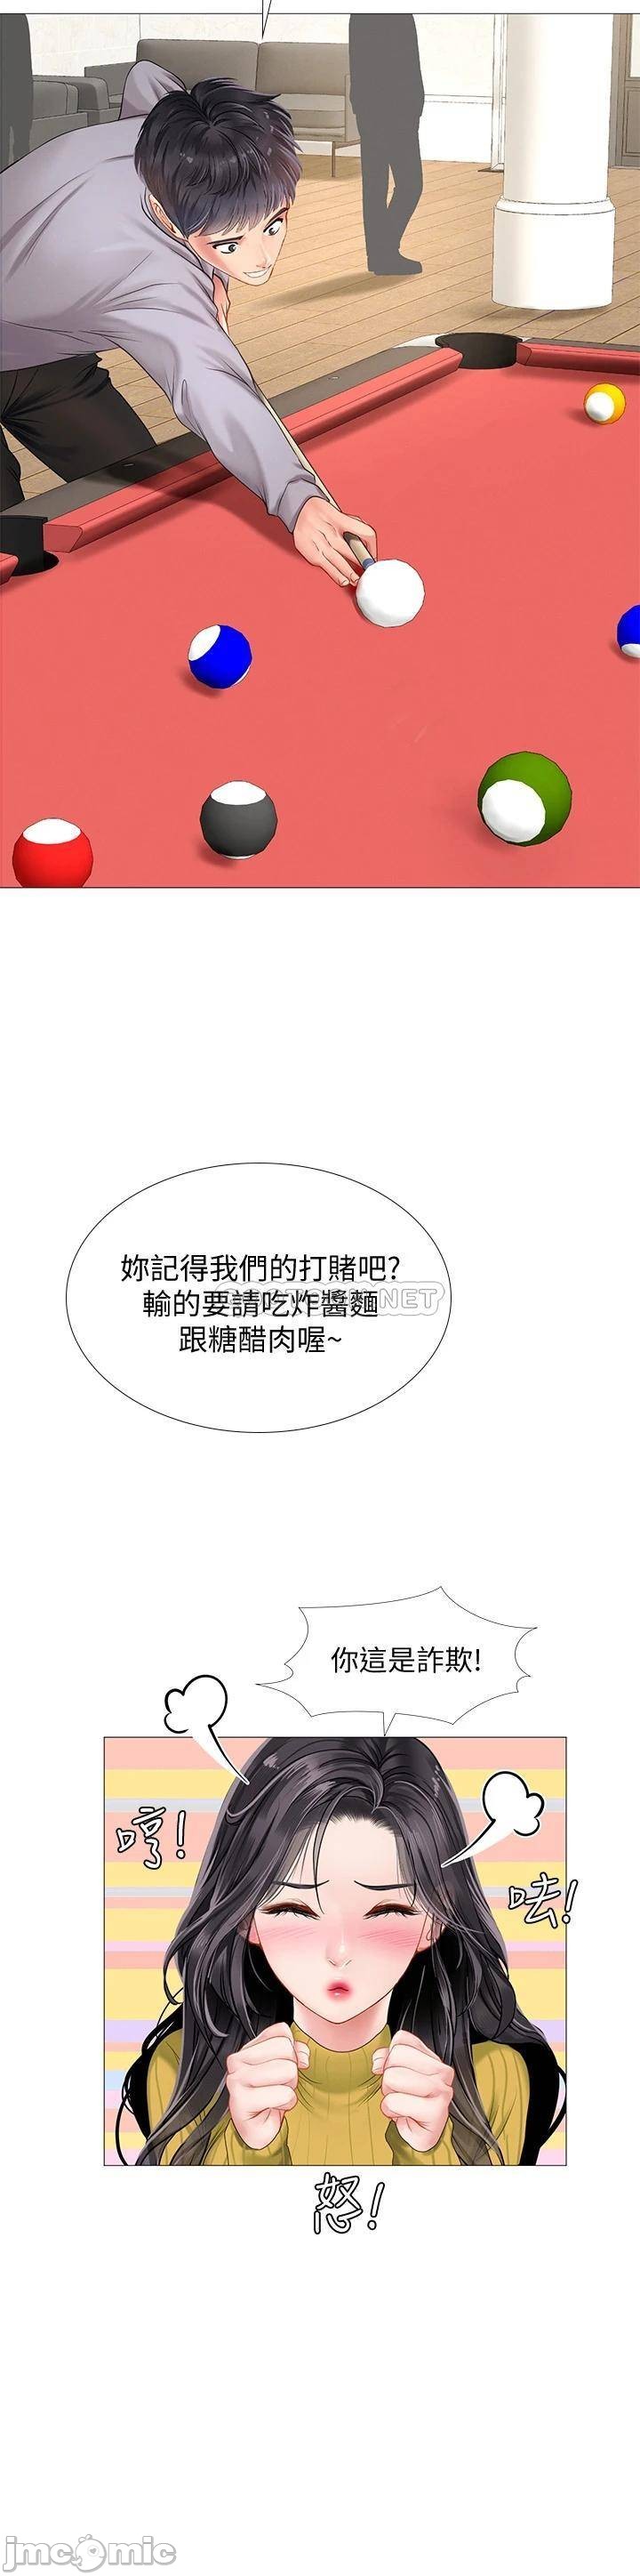 The image Should I Study At Noryangjin Raw - Chapter 90 - 00029 - ManhwaManga.io